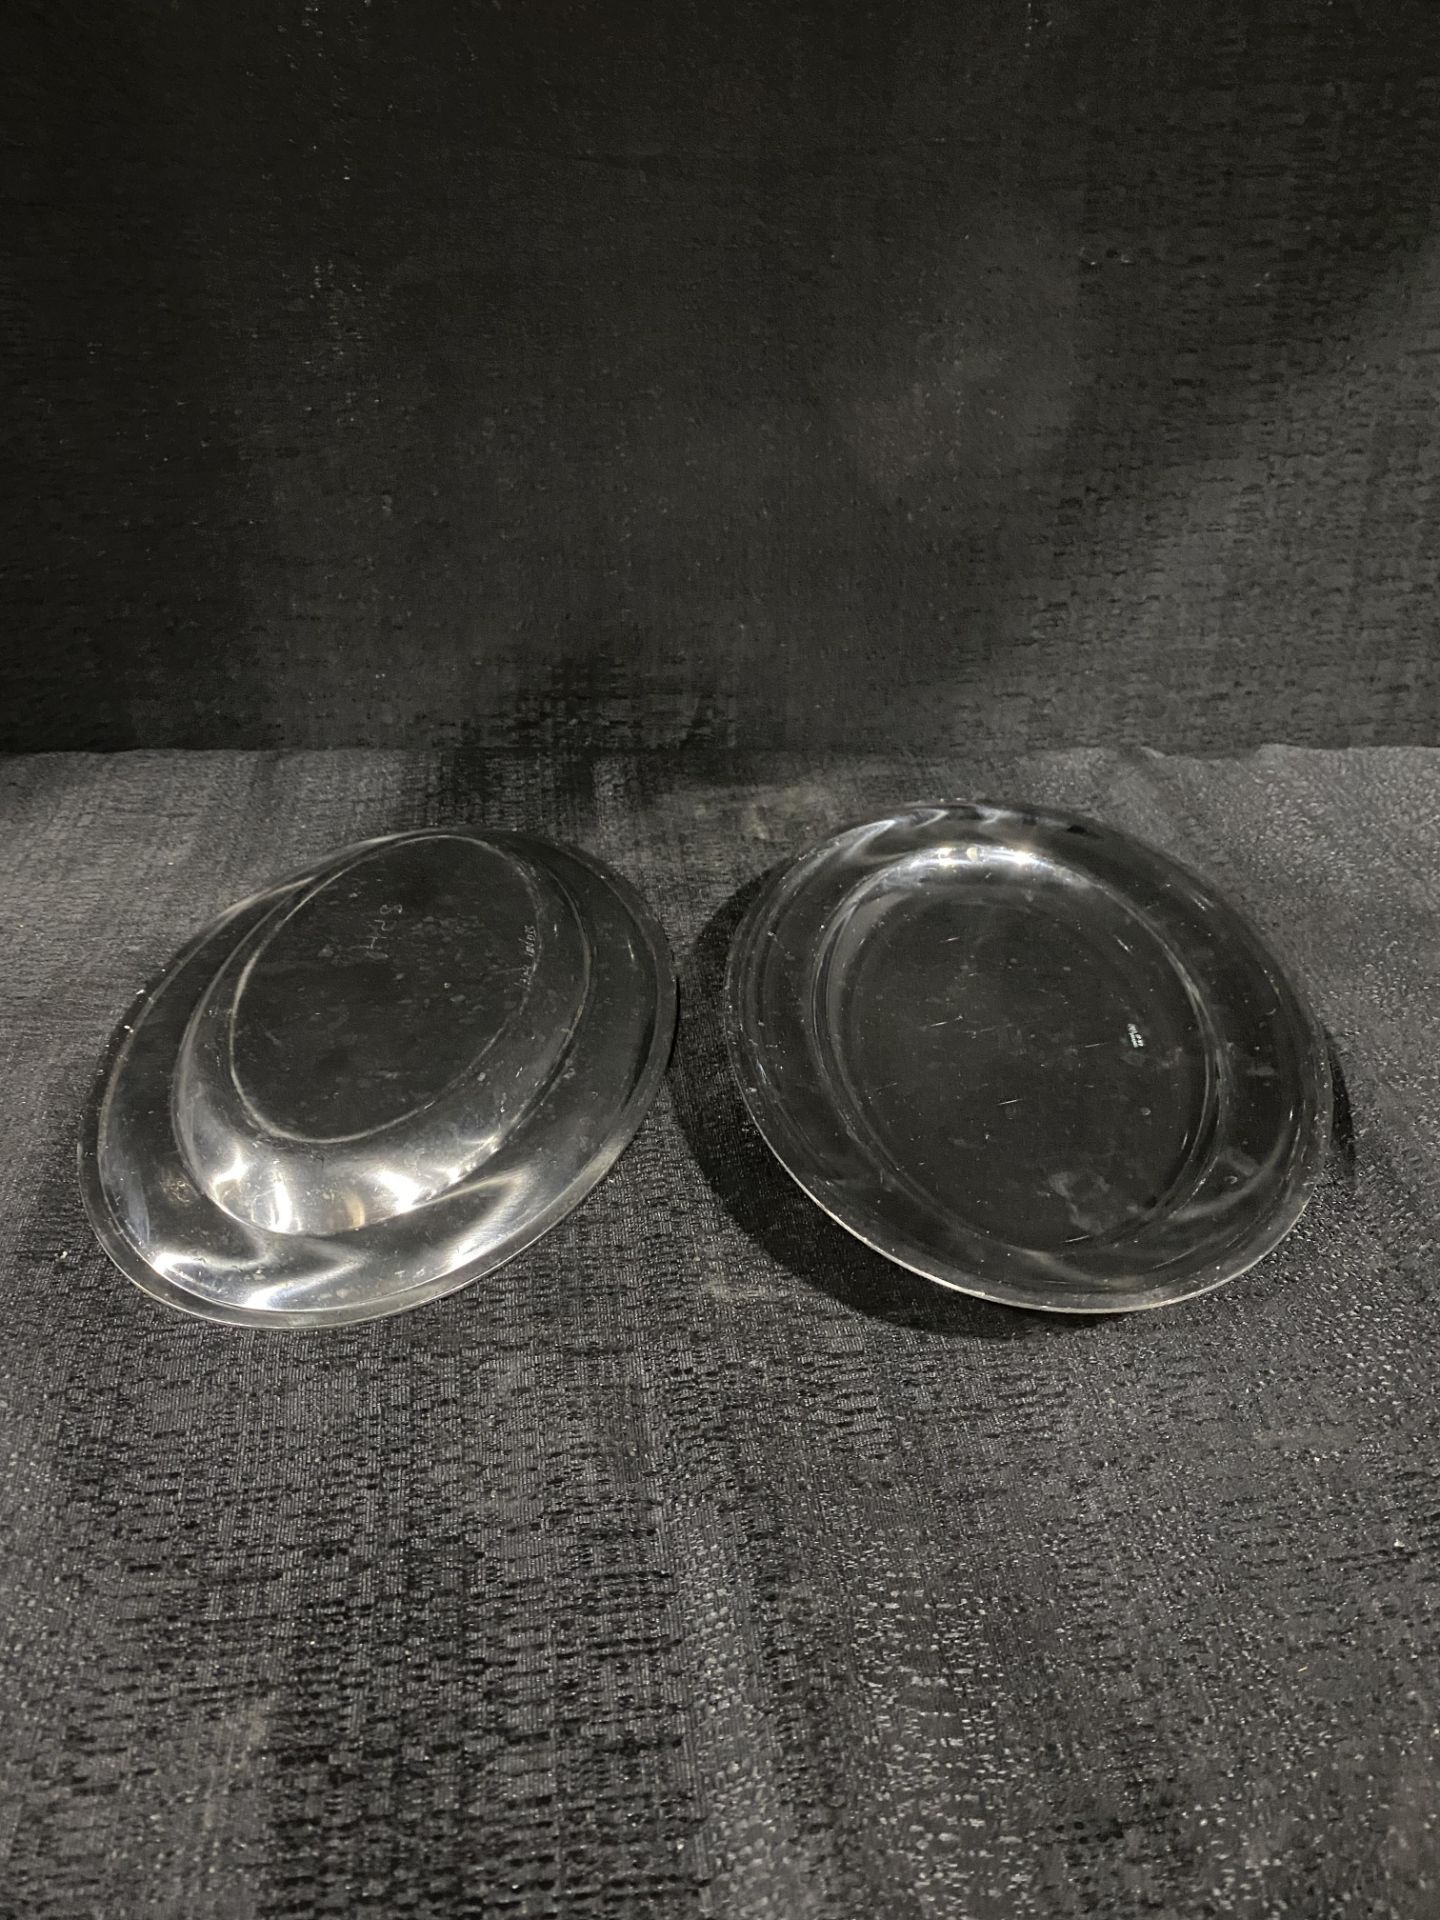 Sambonet Stainless Platters 12" x 7.5" - Image 2 of 2